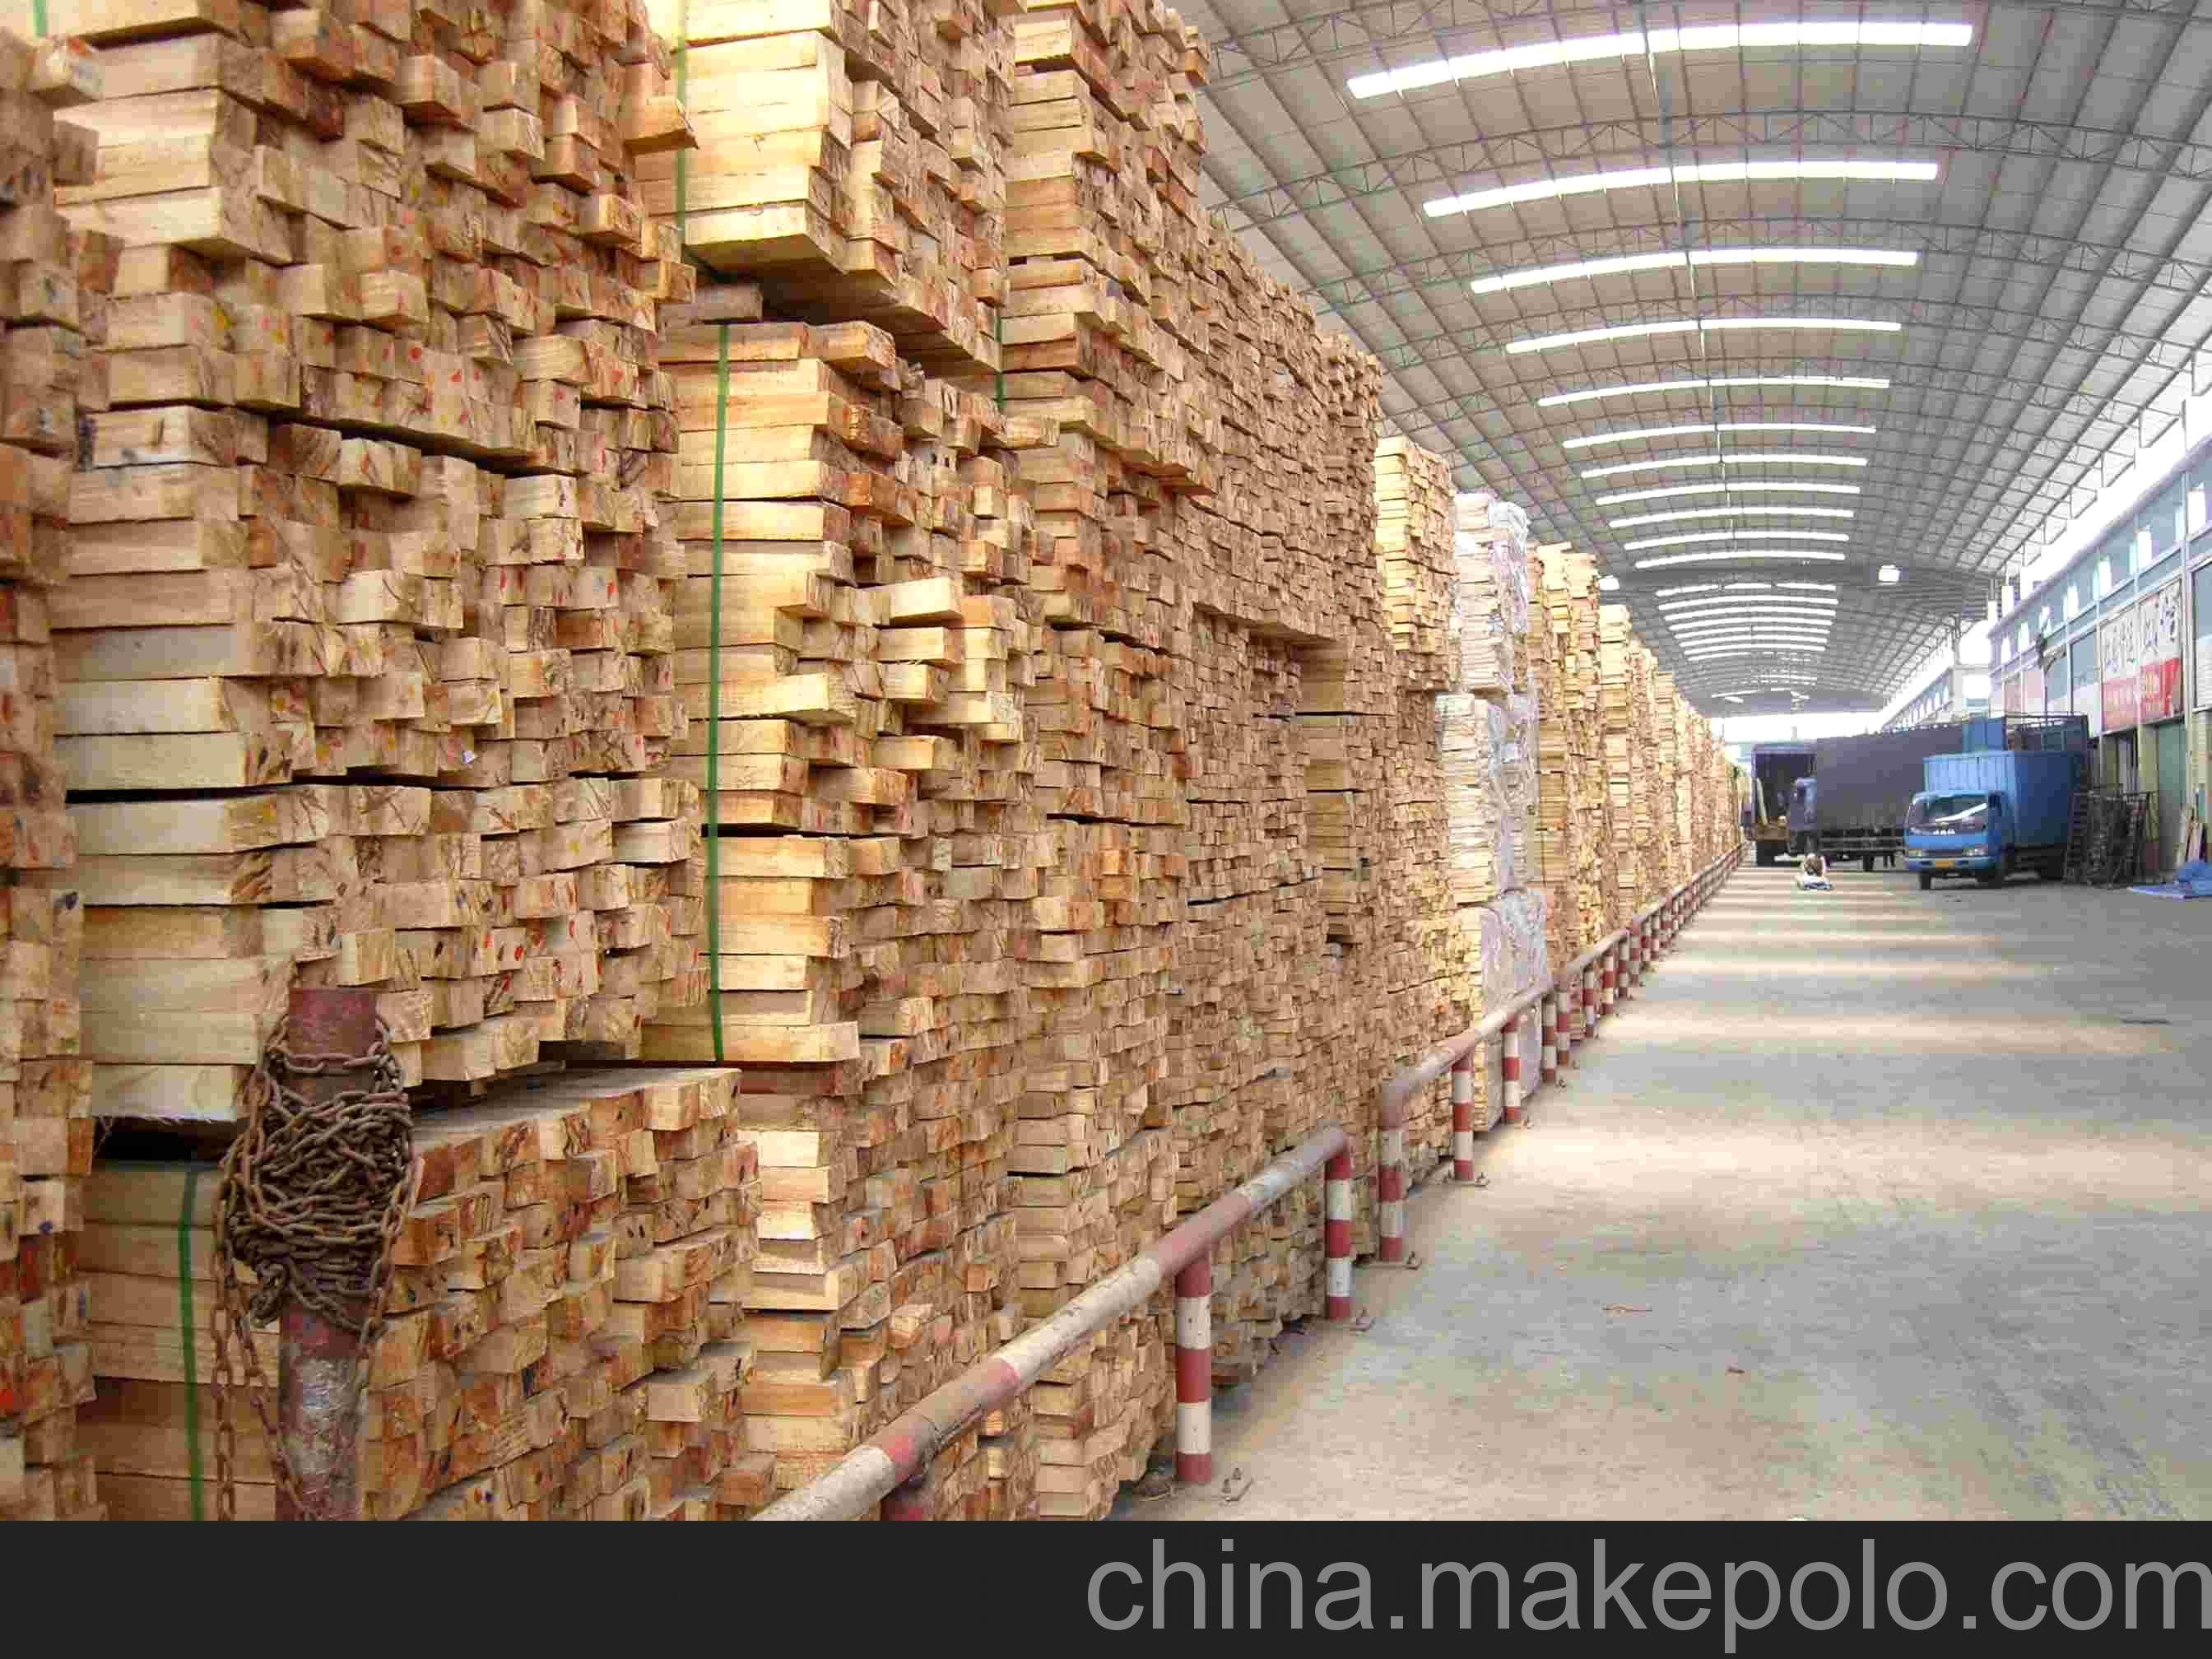 规格齐全、质量过硬、价格实惠的泰国进口橡胶木图片,规格齐全、质量过硬、价格实惠的泰国进口橡胶木图片大全